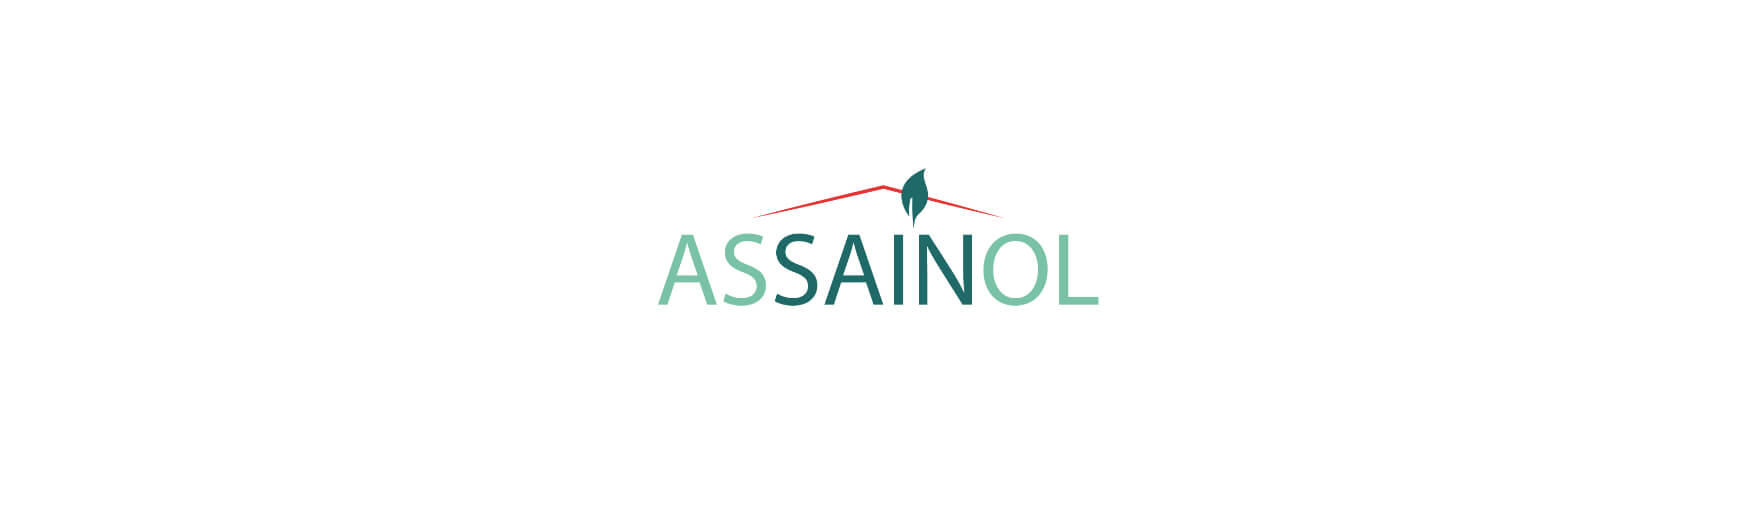 ASSAINOL / アセノール